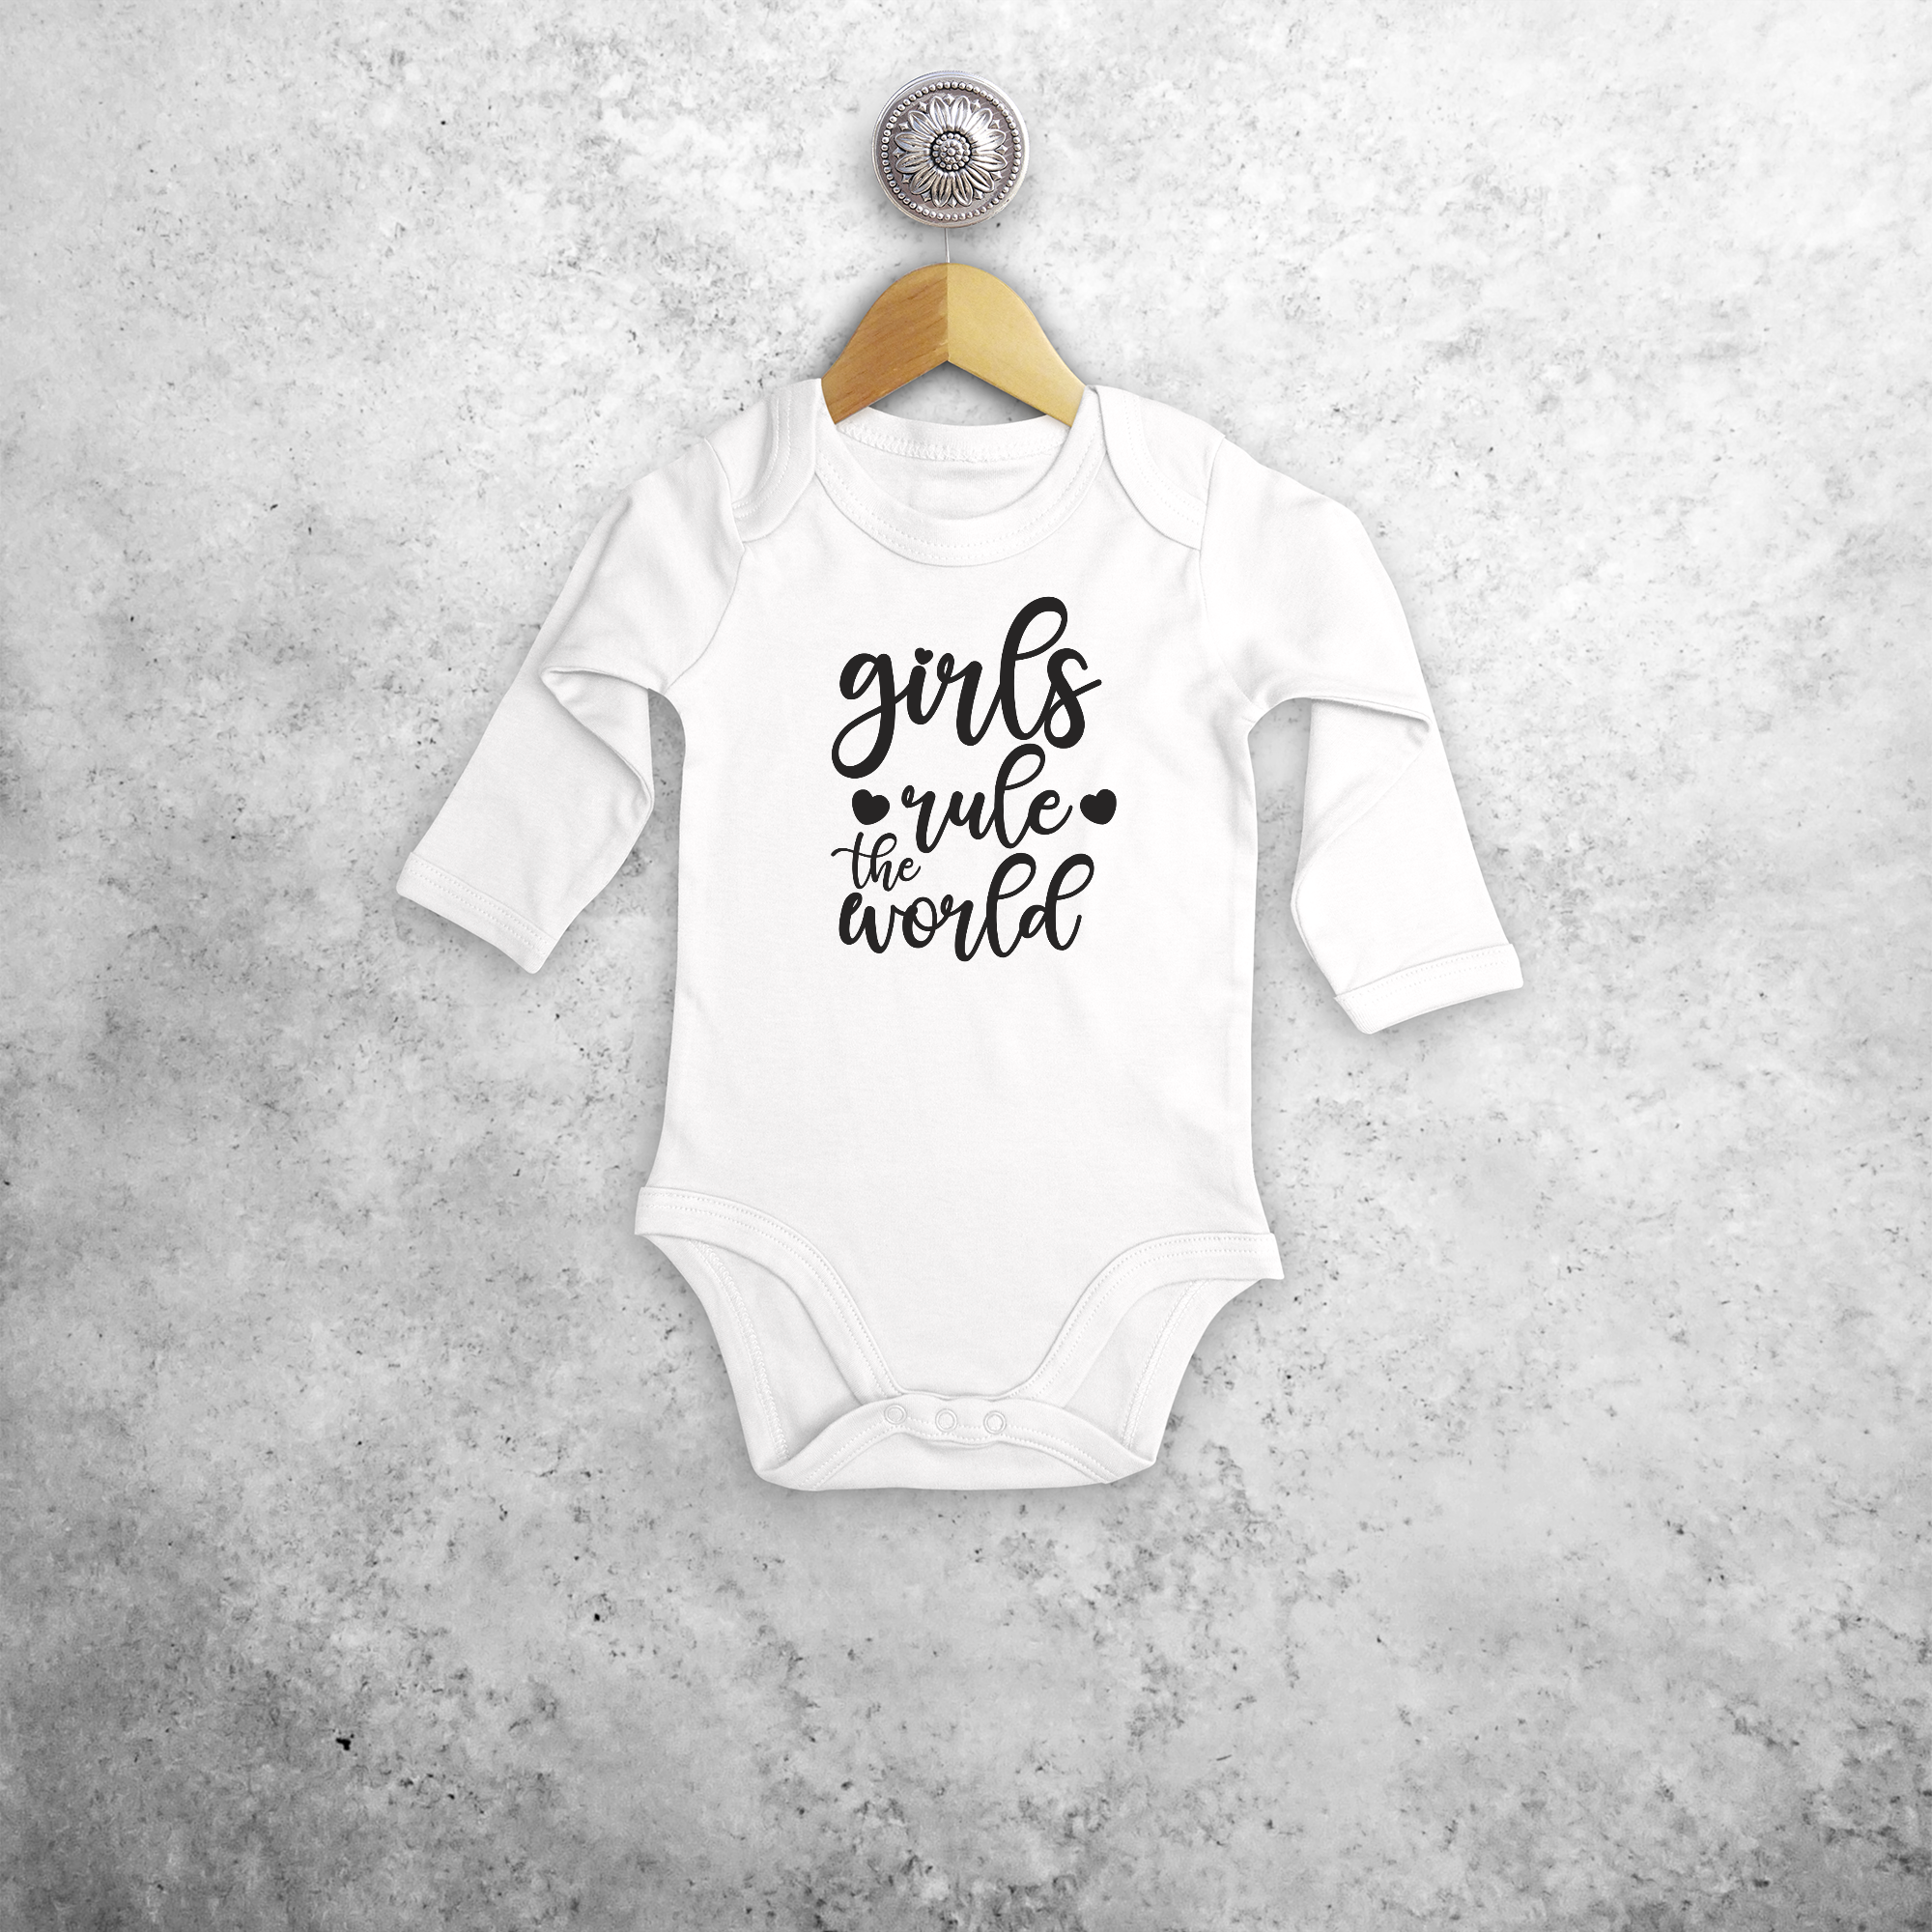 'Girls rule the world' baby kruippakje met lange mouwen